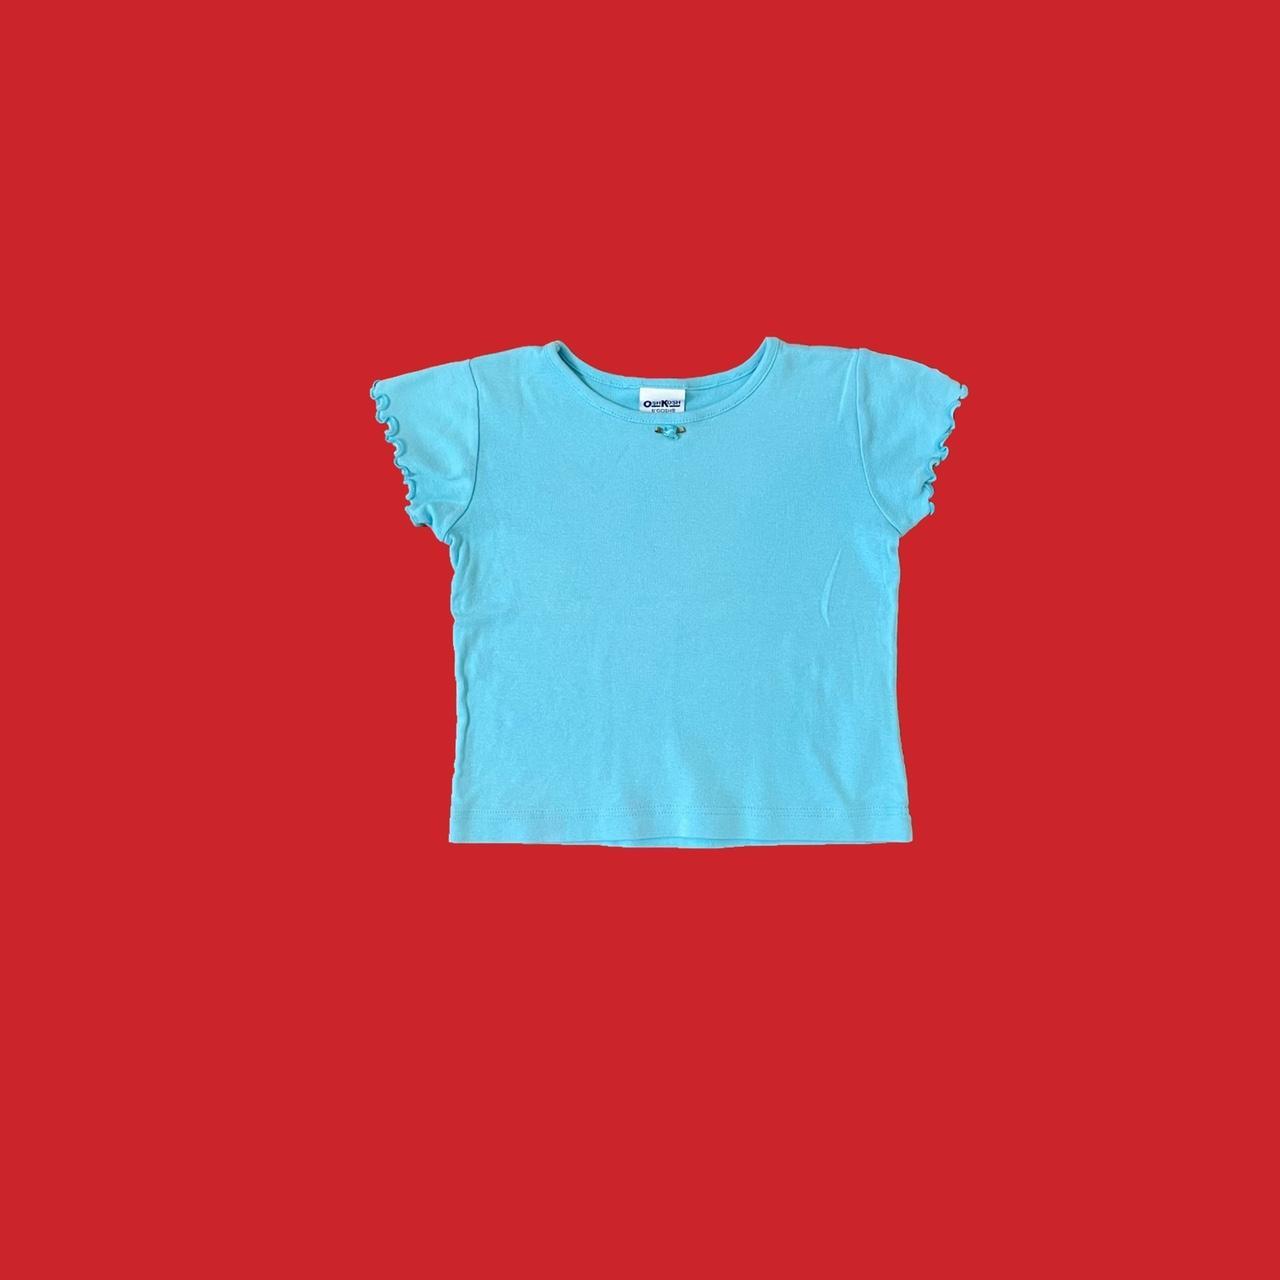 Sky blue plain crop t shirt, T shirt crop tops for women